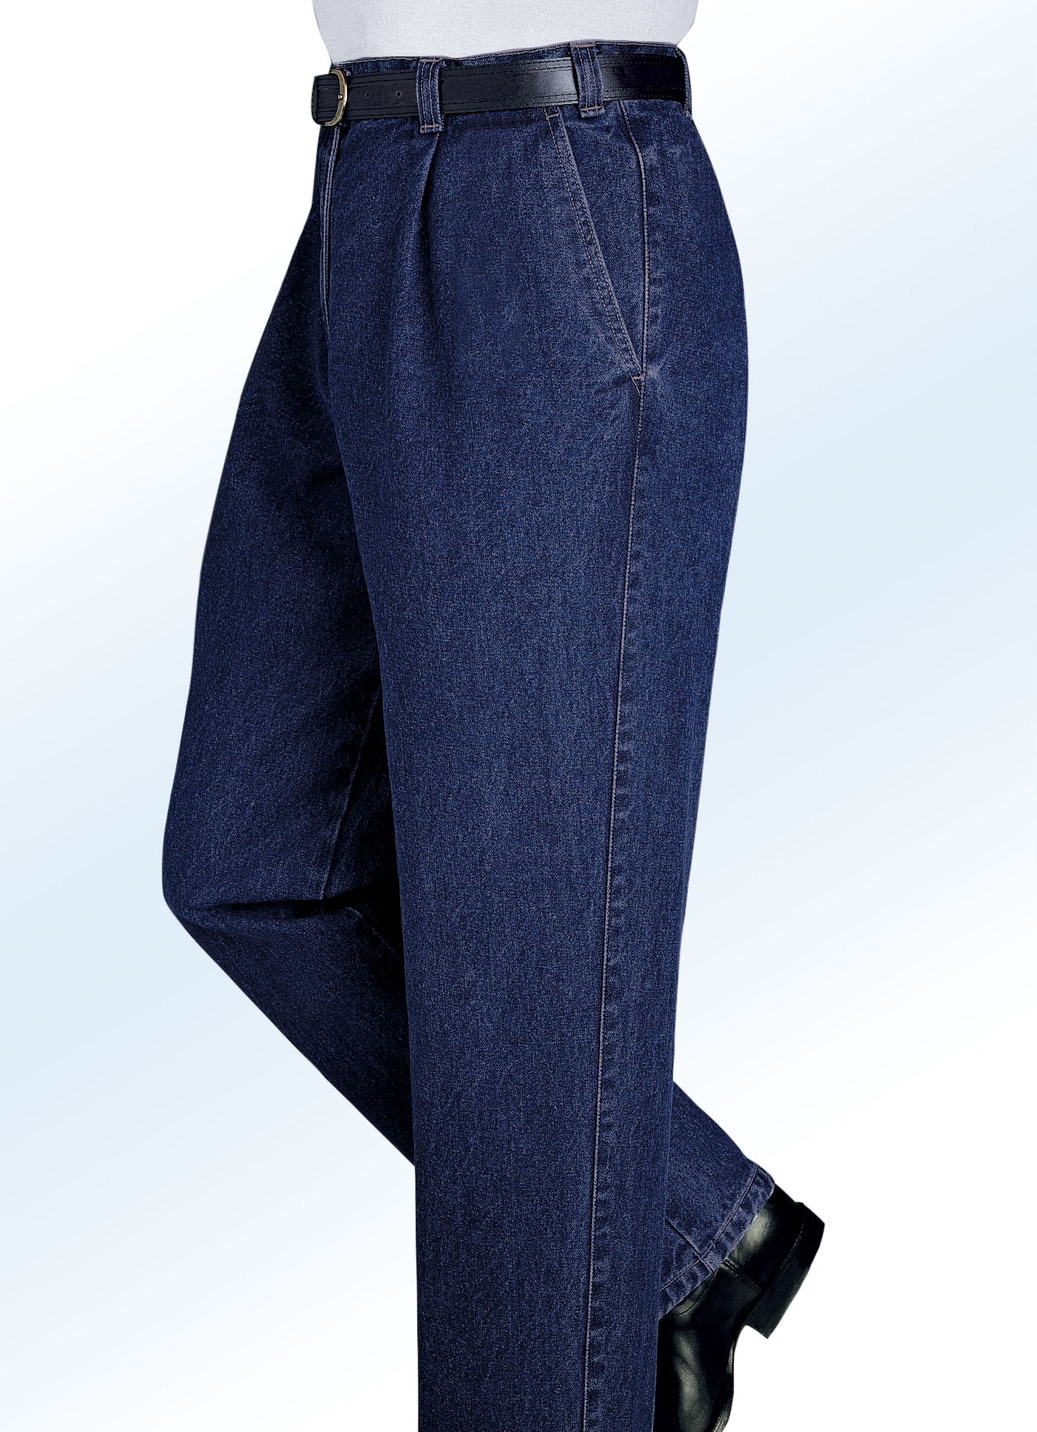 "Francesco Botti"-Jeans in 2 Qualitäten und 3 Farben, Qualität 1.Qualität, Dunkeljeans, Größe 27 von FRANCESCO BOTTI